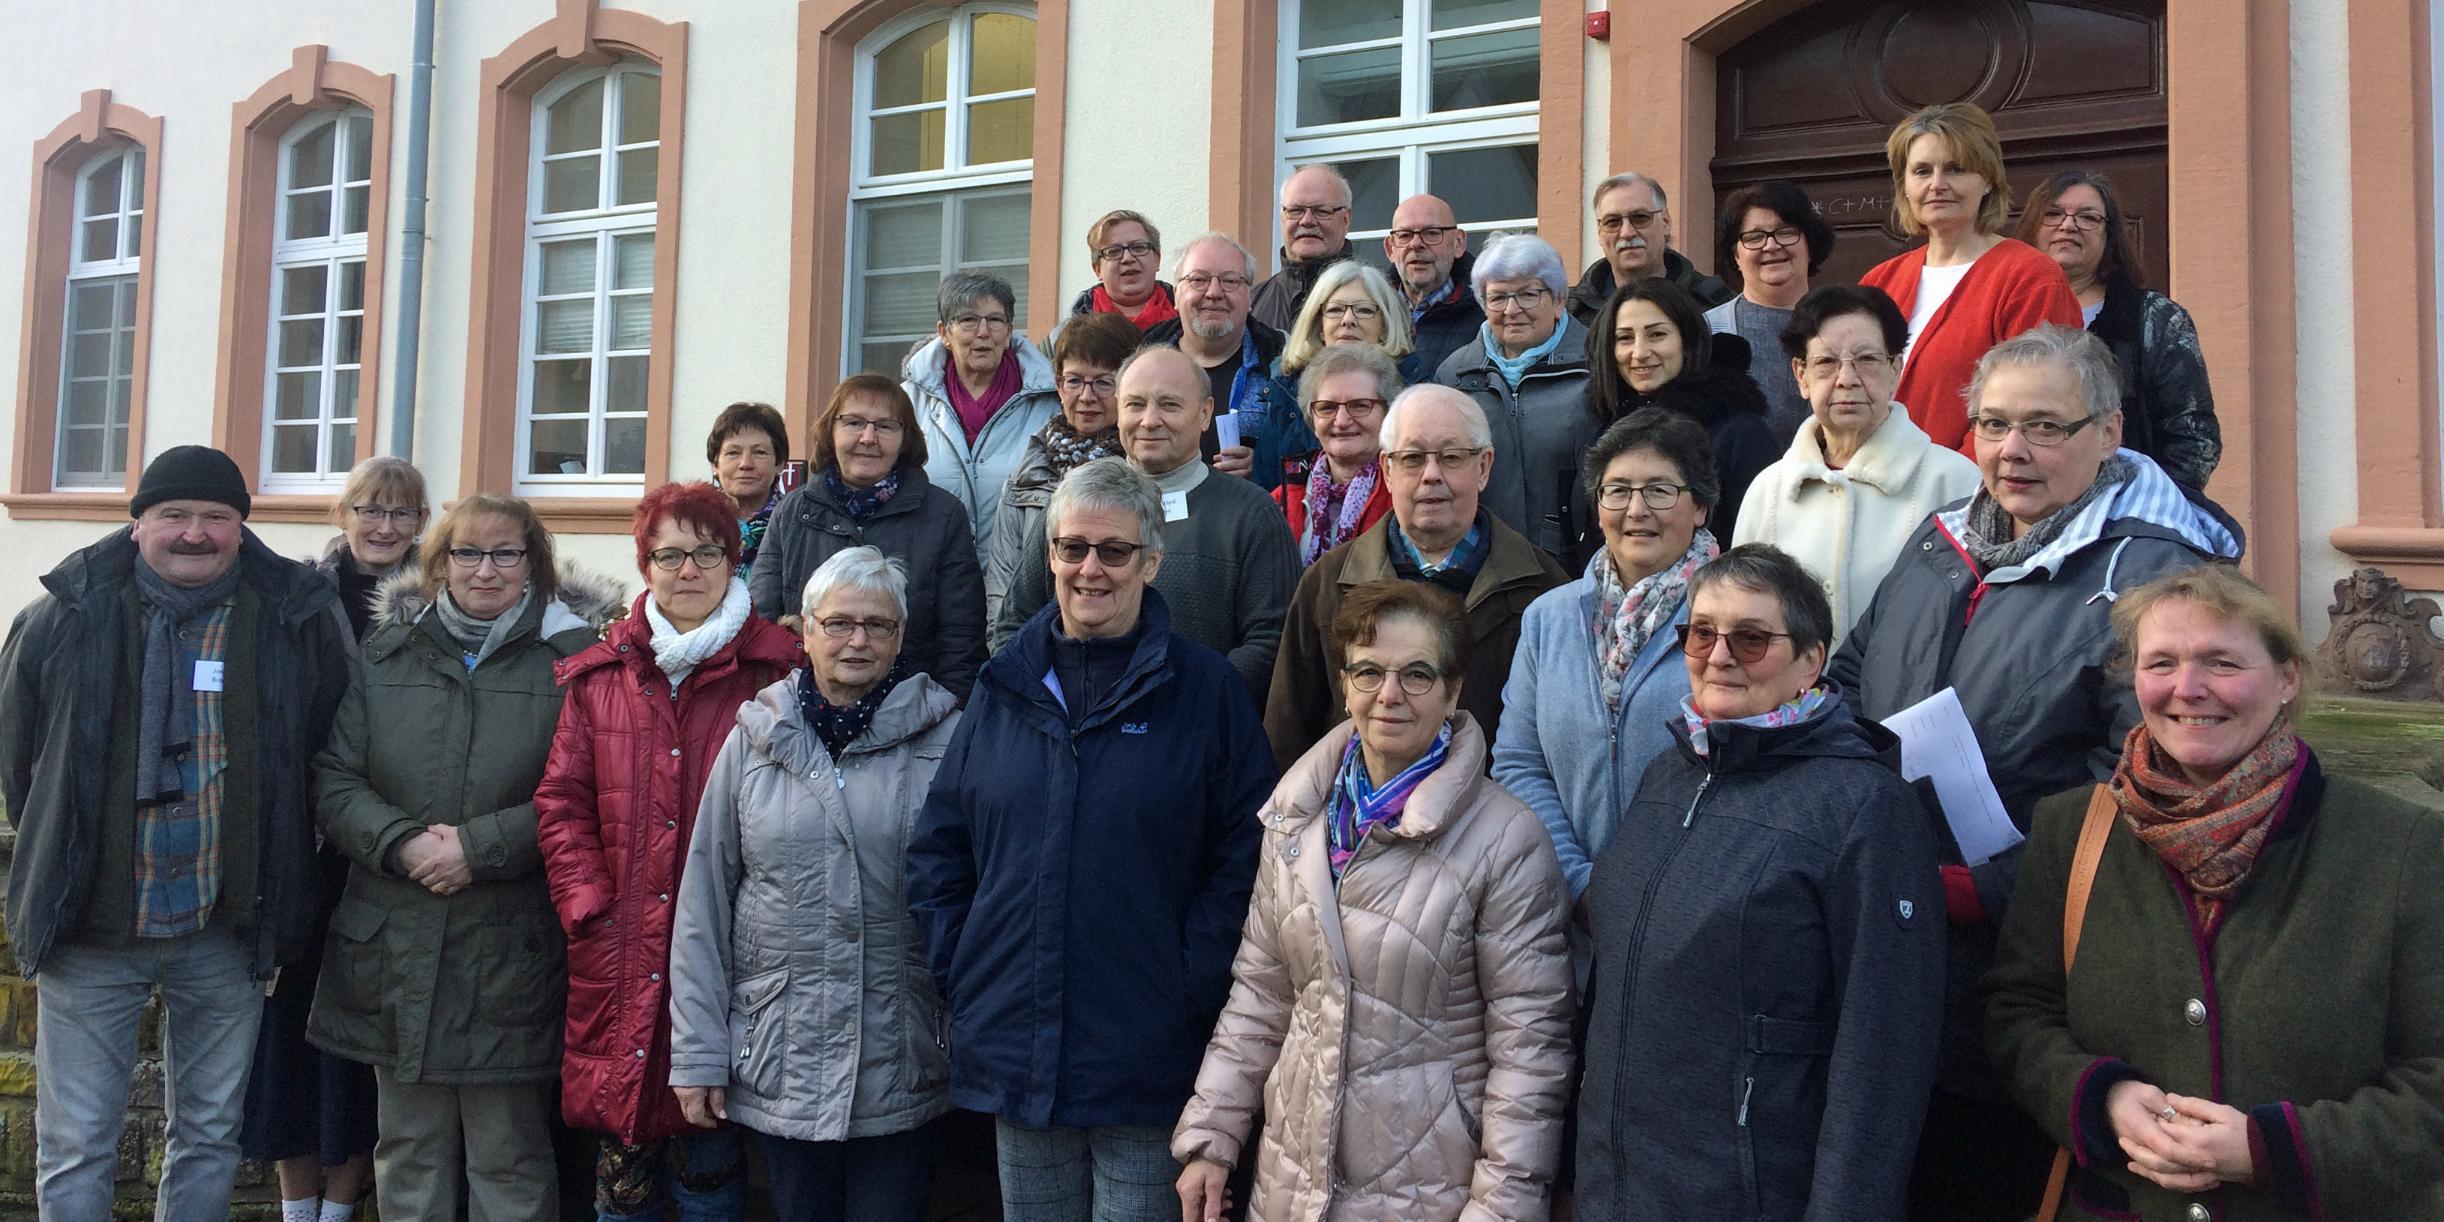 Die Teilnehmerinnen und Teilnehmer des Fortbildungskurses in Sankt Thomas im vergangenen Dezember mit Ausbilder Achim Müller (hintere Reihe, 2. von links).